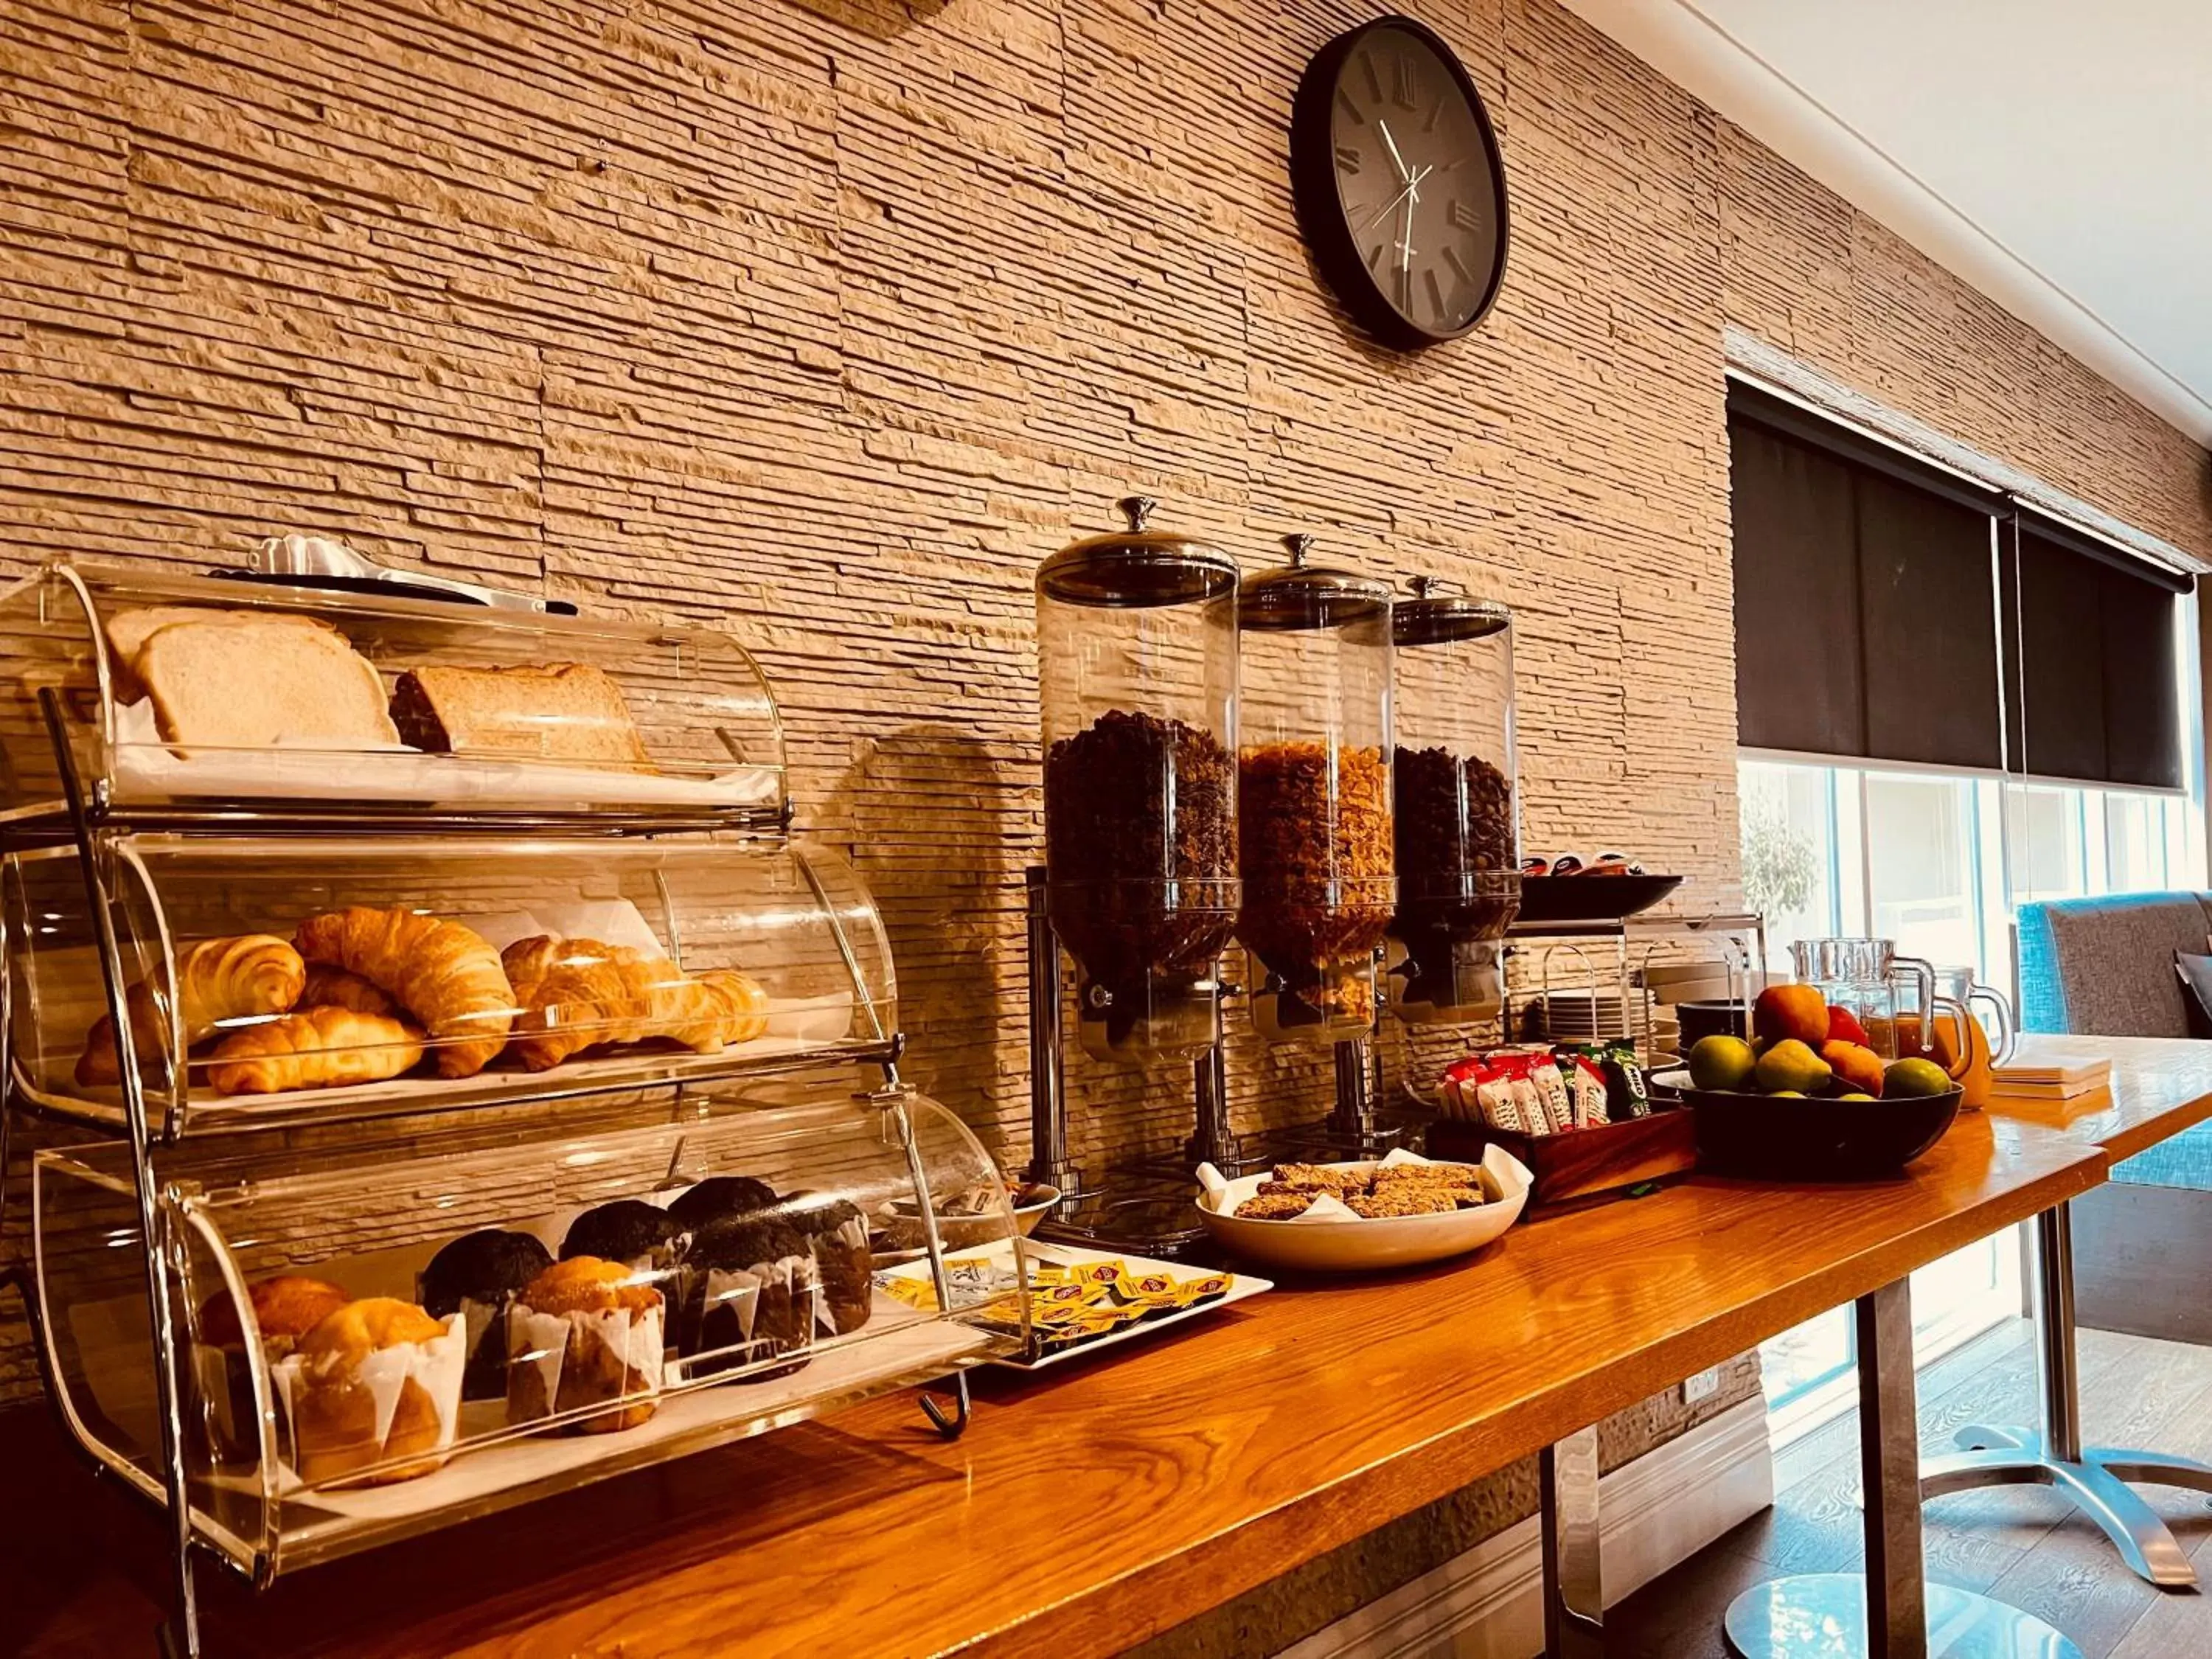 Buffet breakfast, Food in The Waverley International Hotel